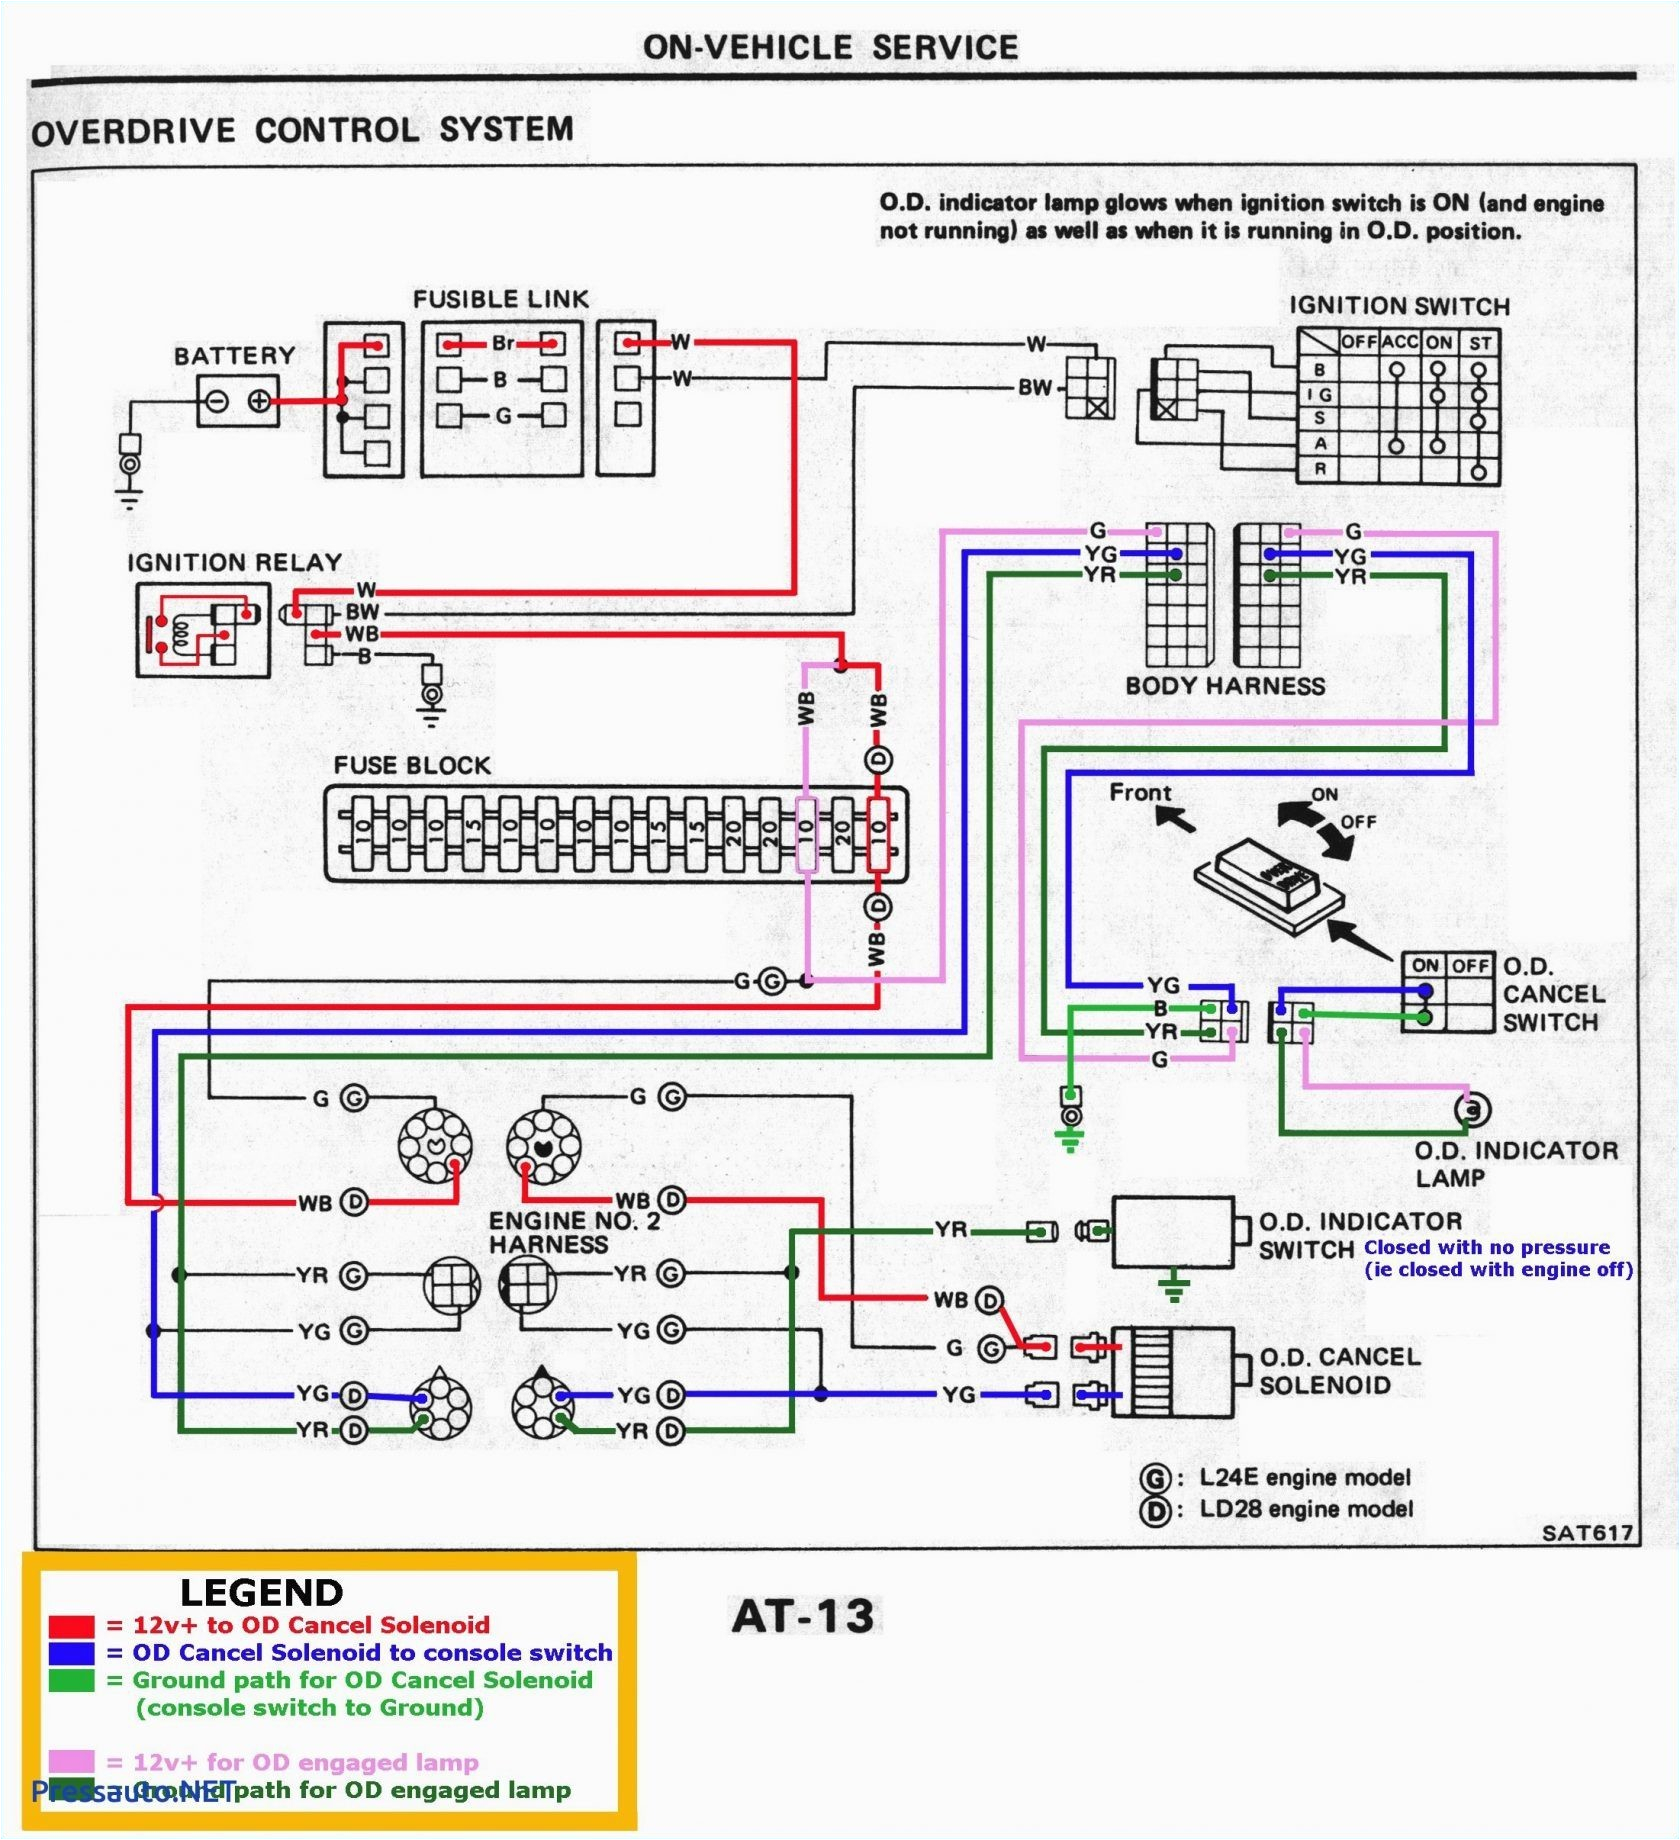 wiring diagram 2012 mazda 3 wiring diagram go vp headlight wiring diagram vp headlight wiring diagram